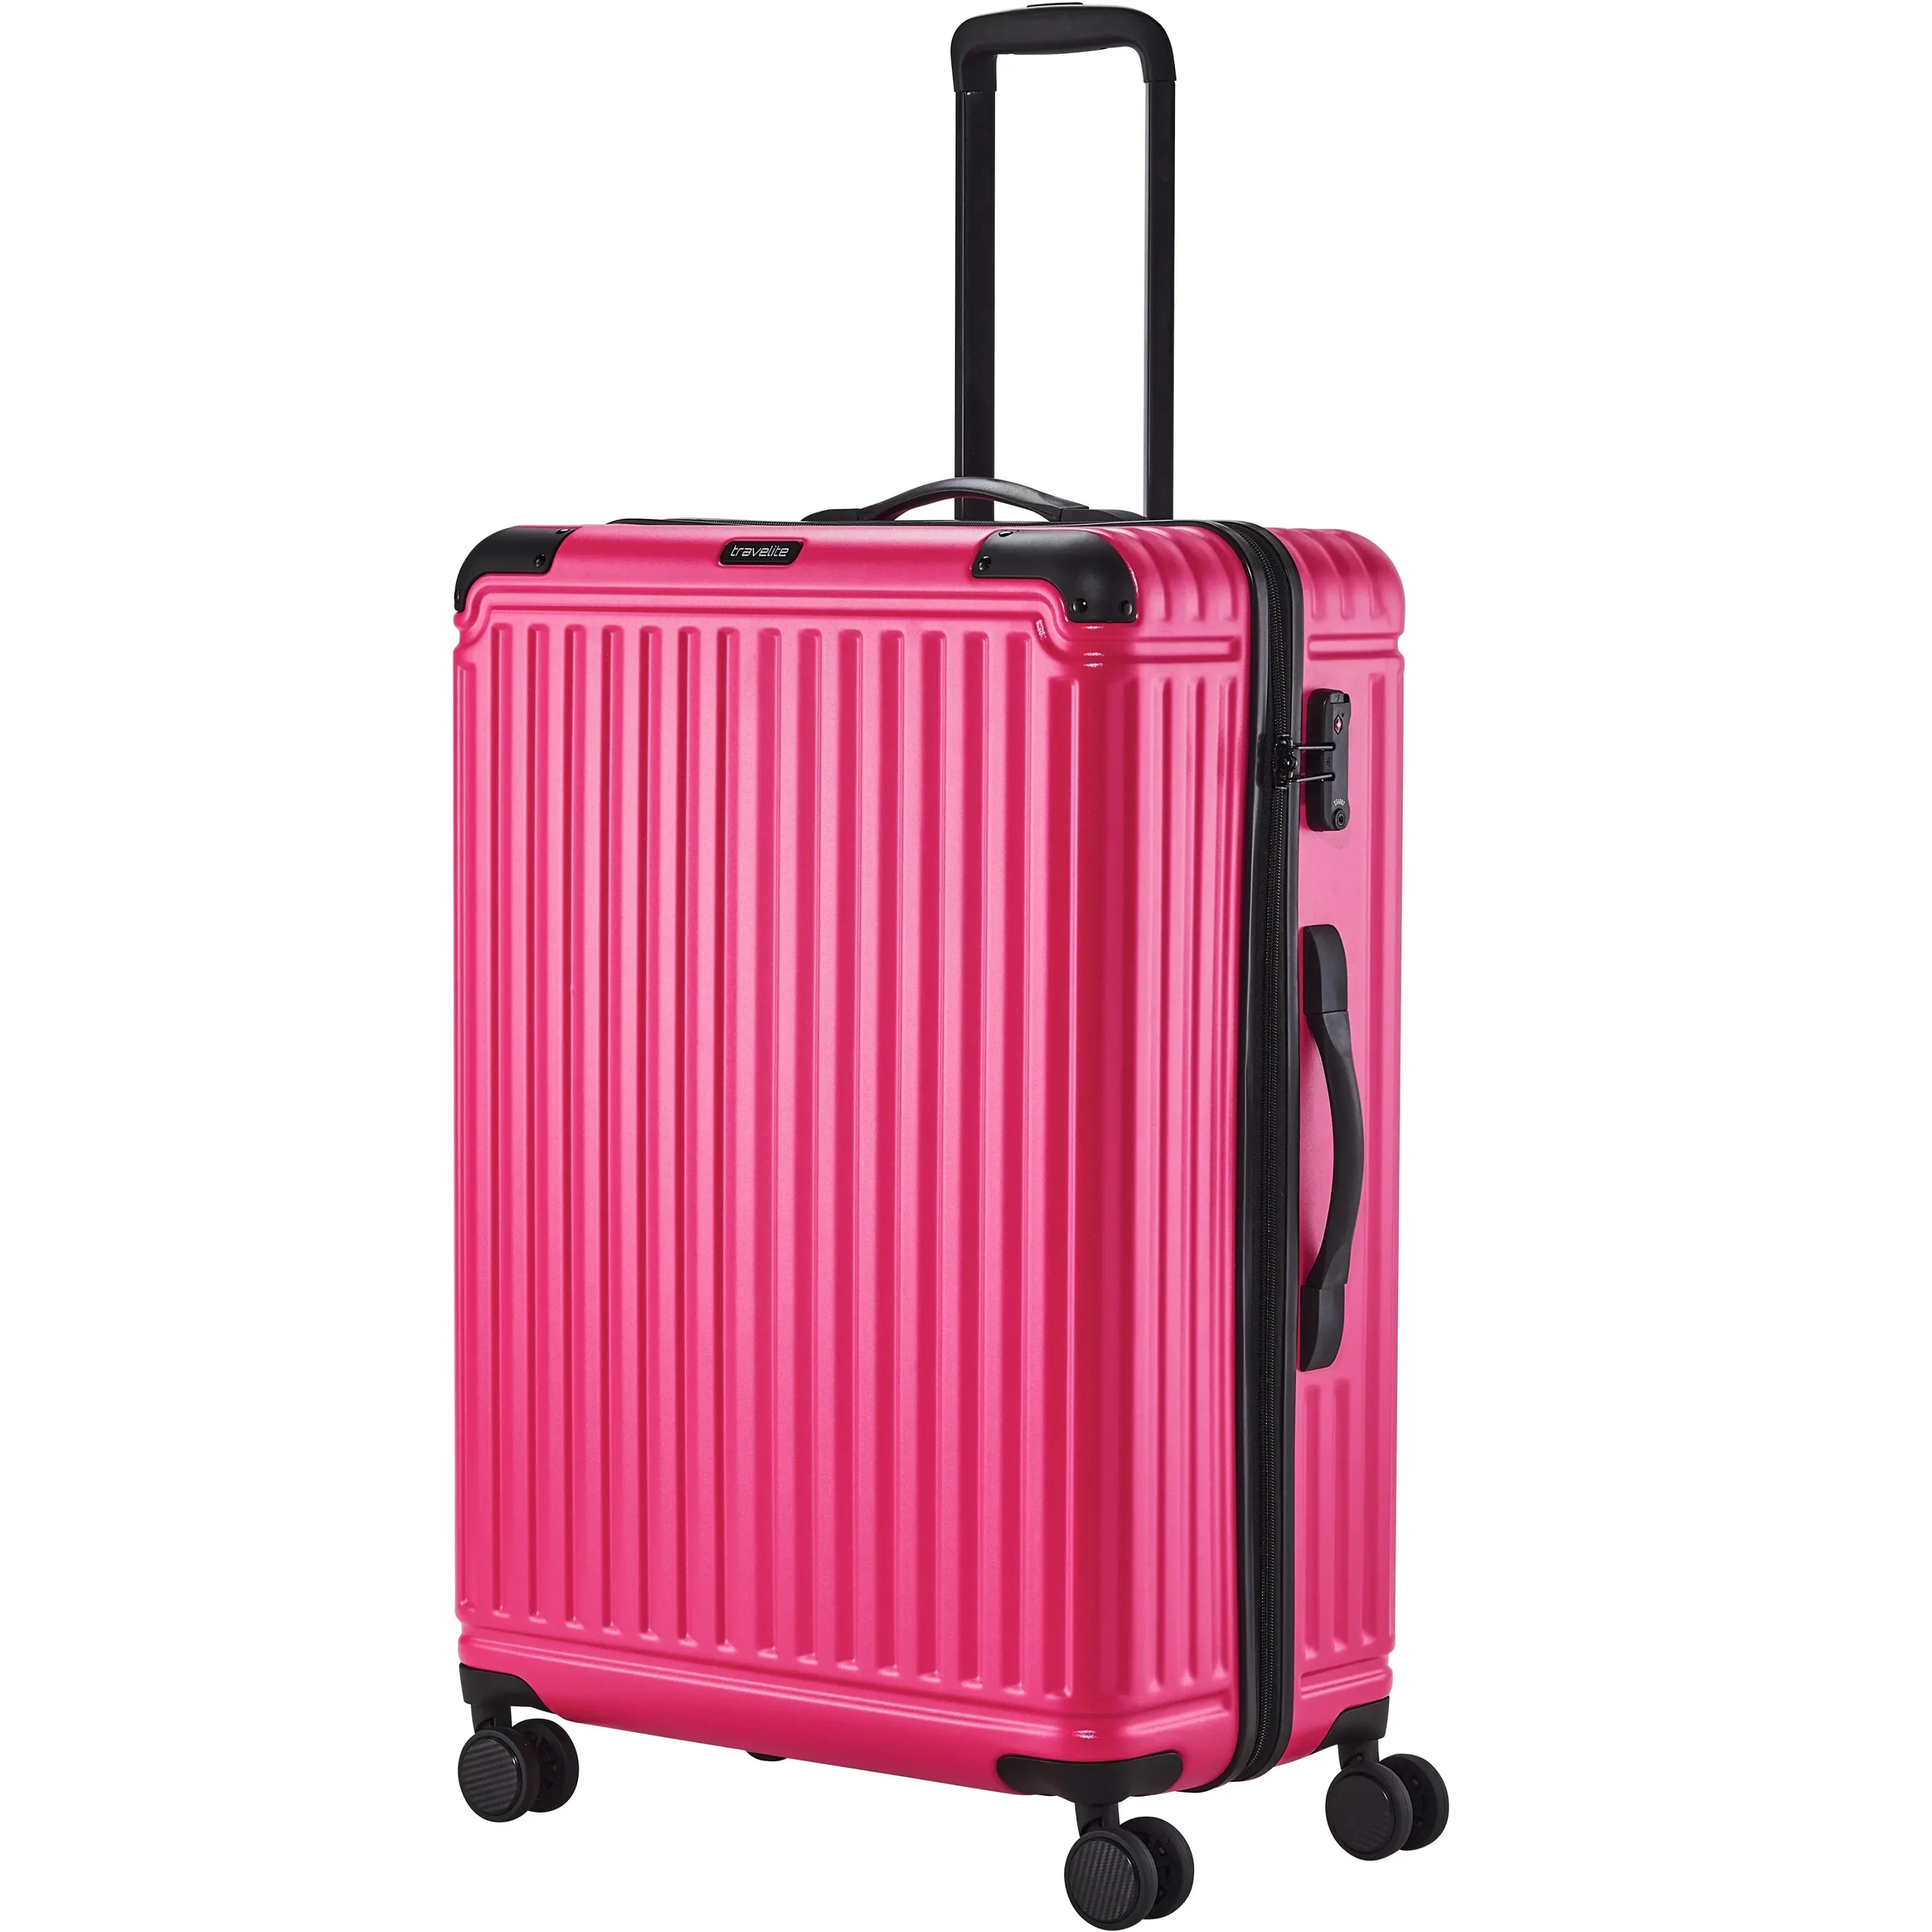 Travelite Cruise 4-Rollen Trolley 77 cm - Pink